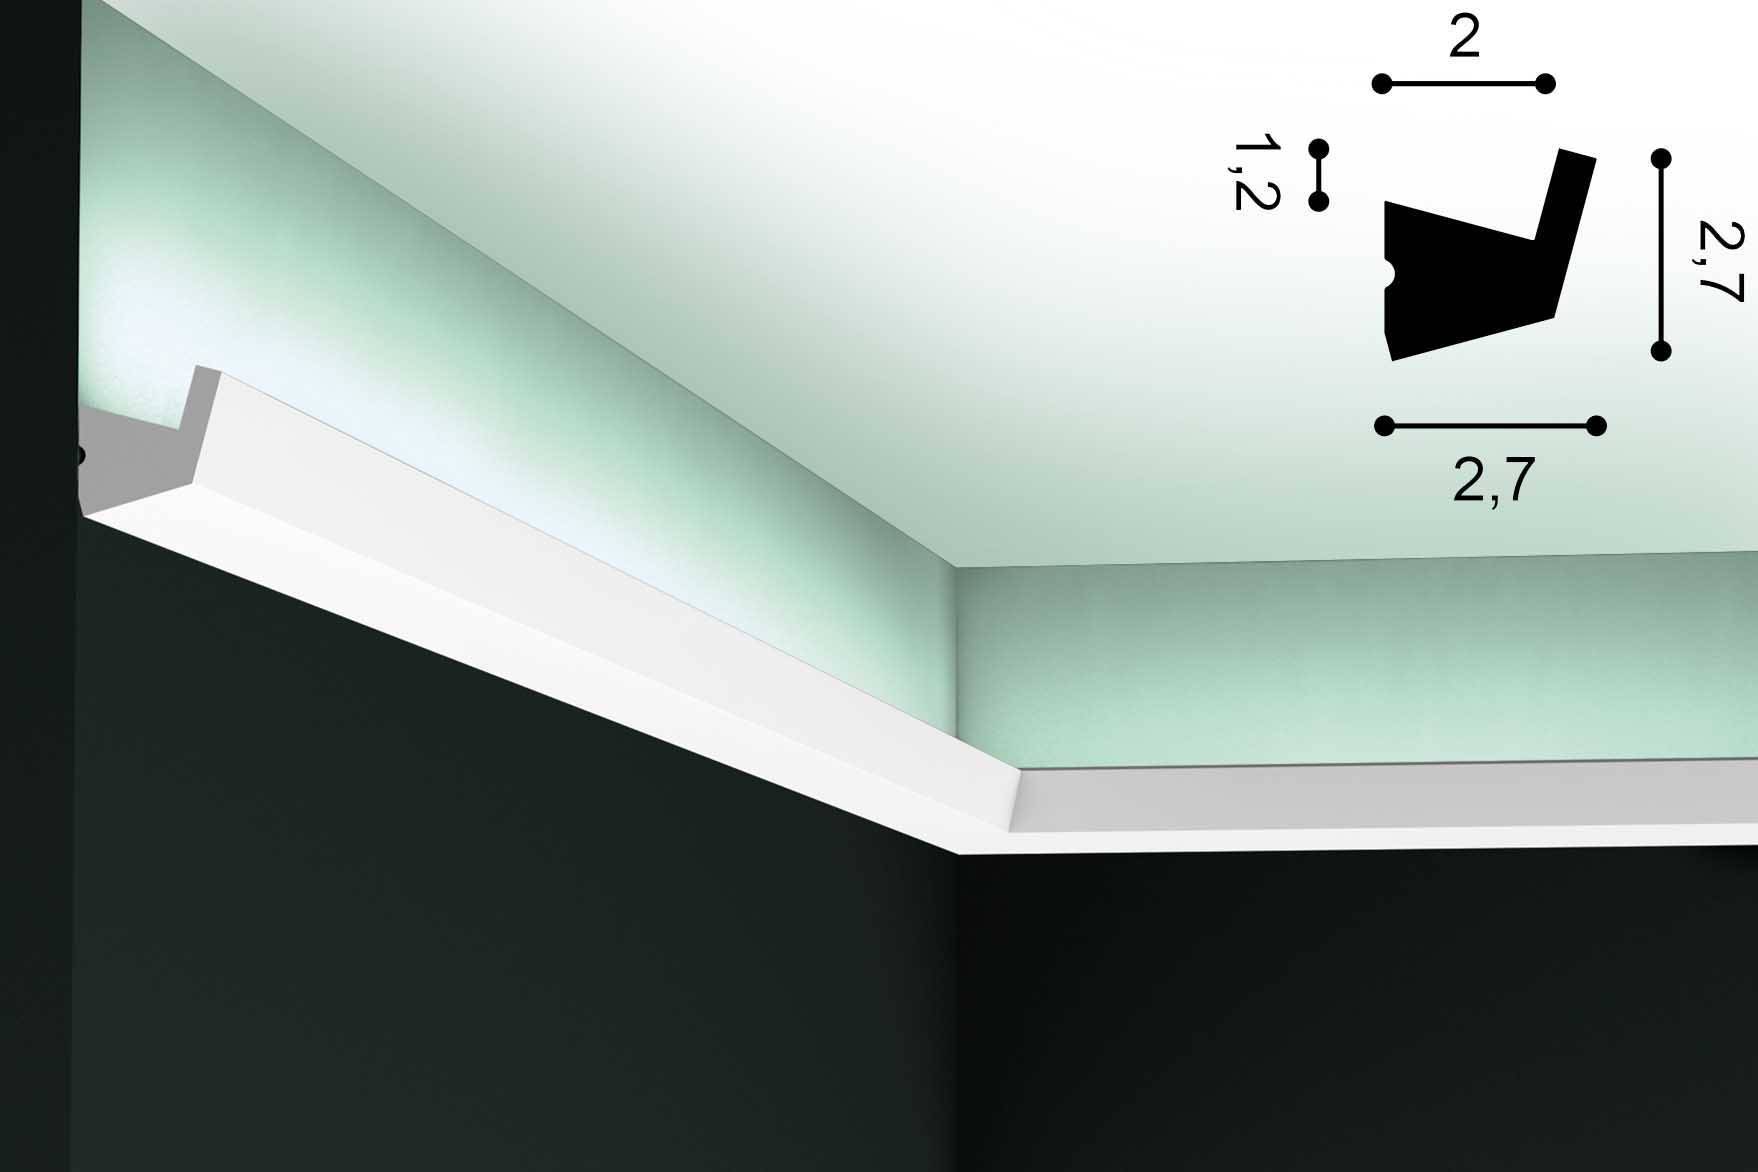 Подсветка потолка светодиодной лентой под плинтусом фото: расчет, виды, как выбрать, видео
эффектная подсветка потолка светодиодной лентой под плинтусом – дизайн интерьера и ремонт квартиры своими руками